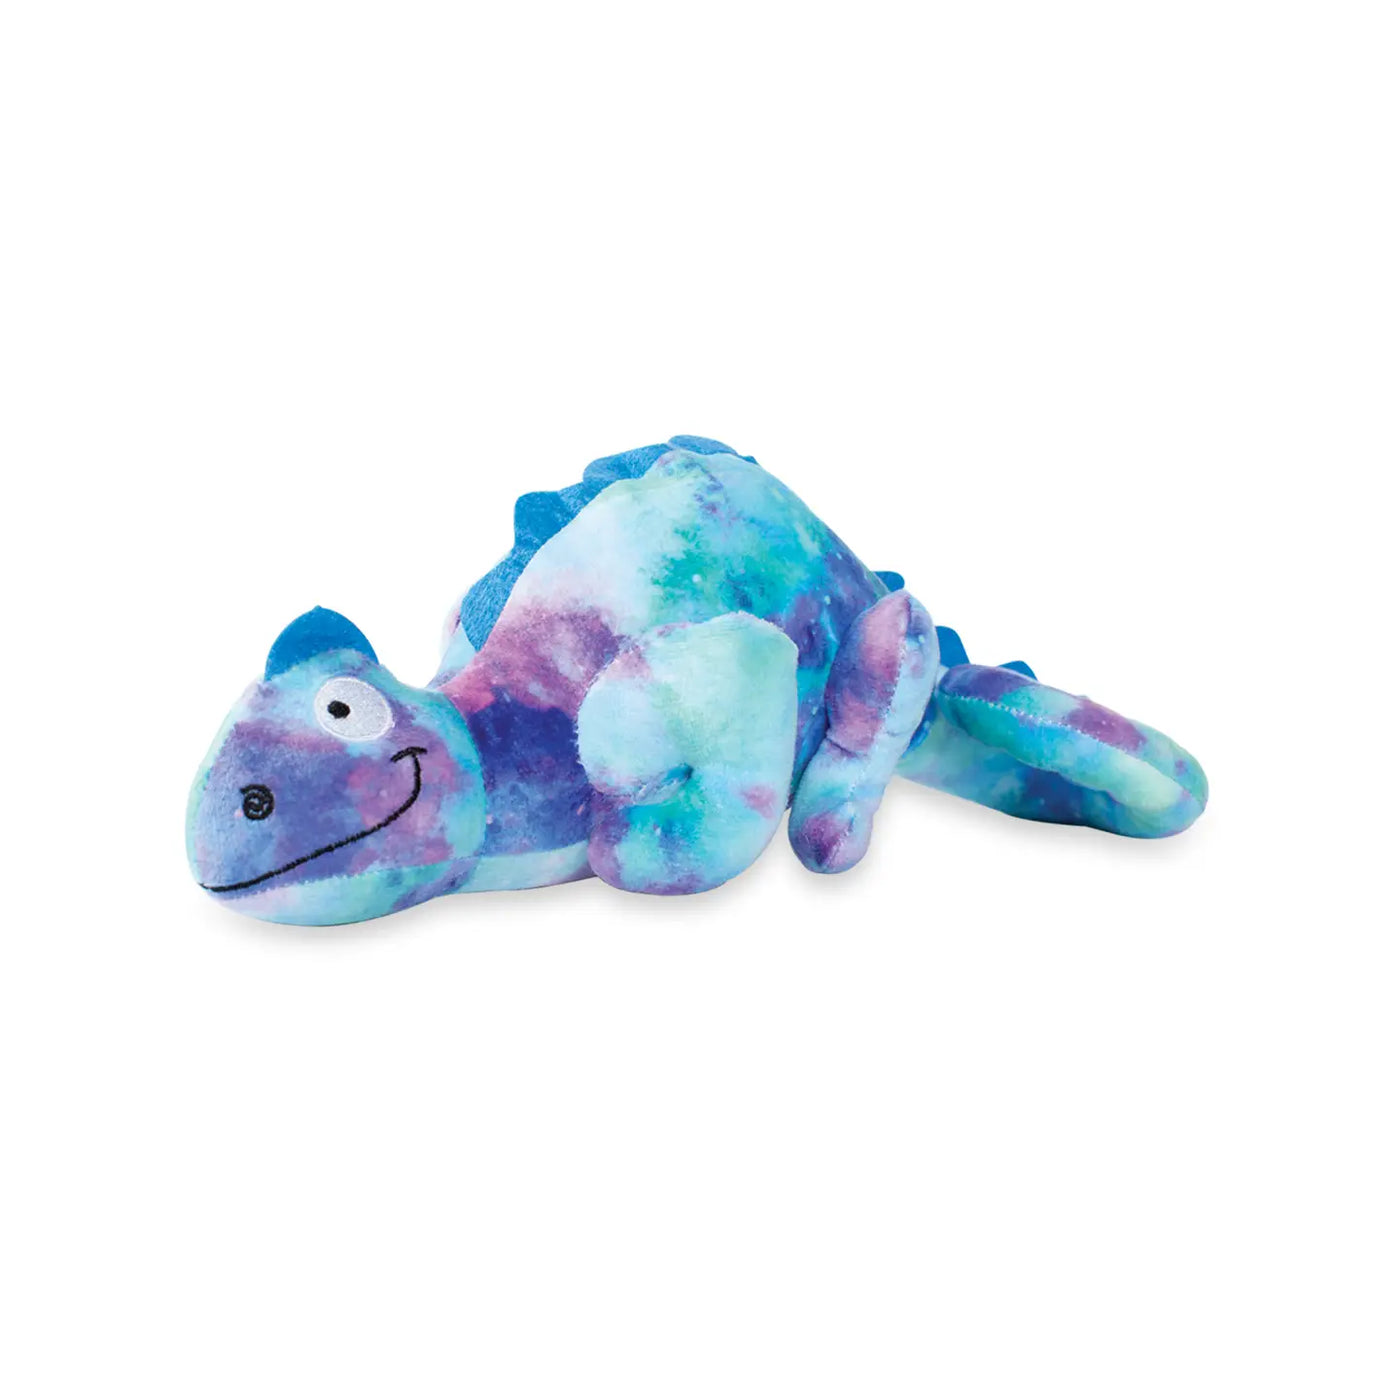 Fringe Plush Dog Toy - I Can Change Chameleon